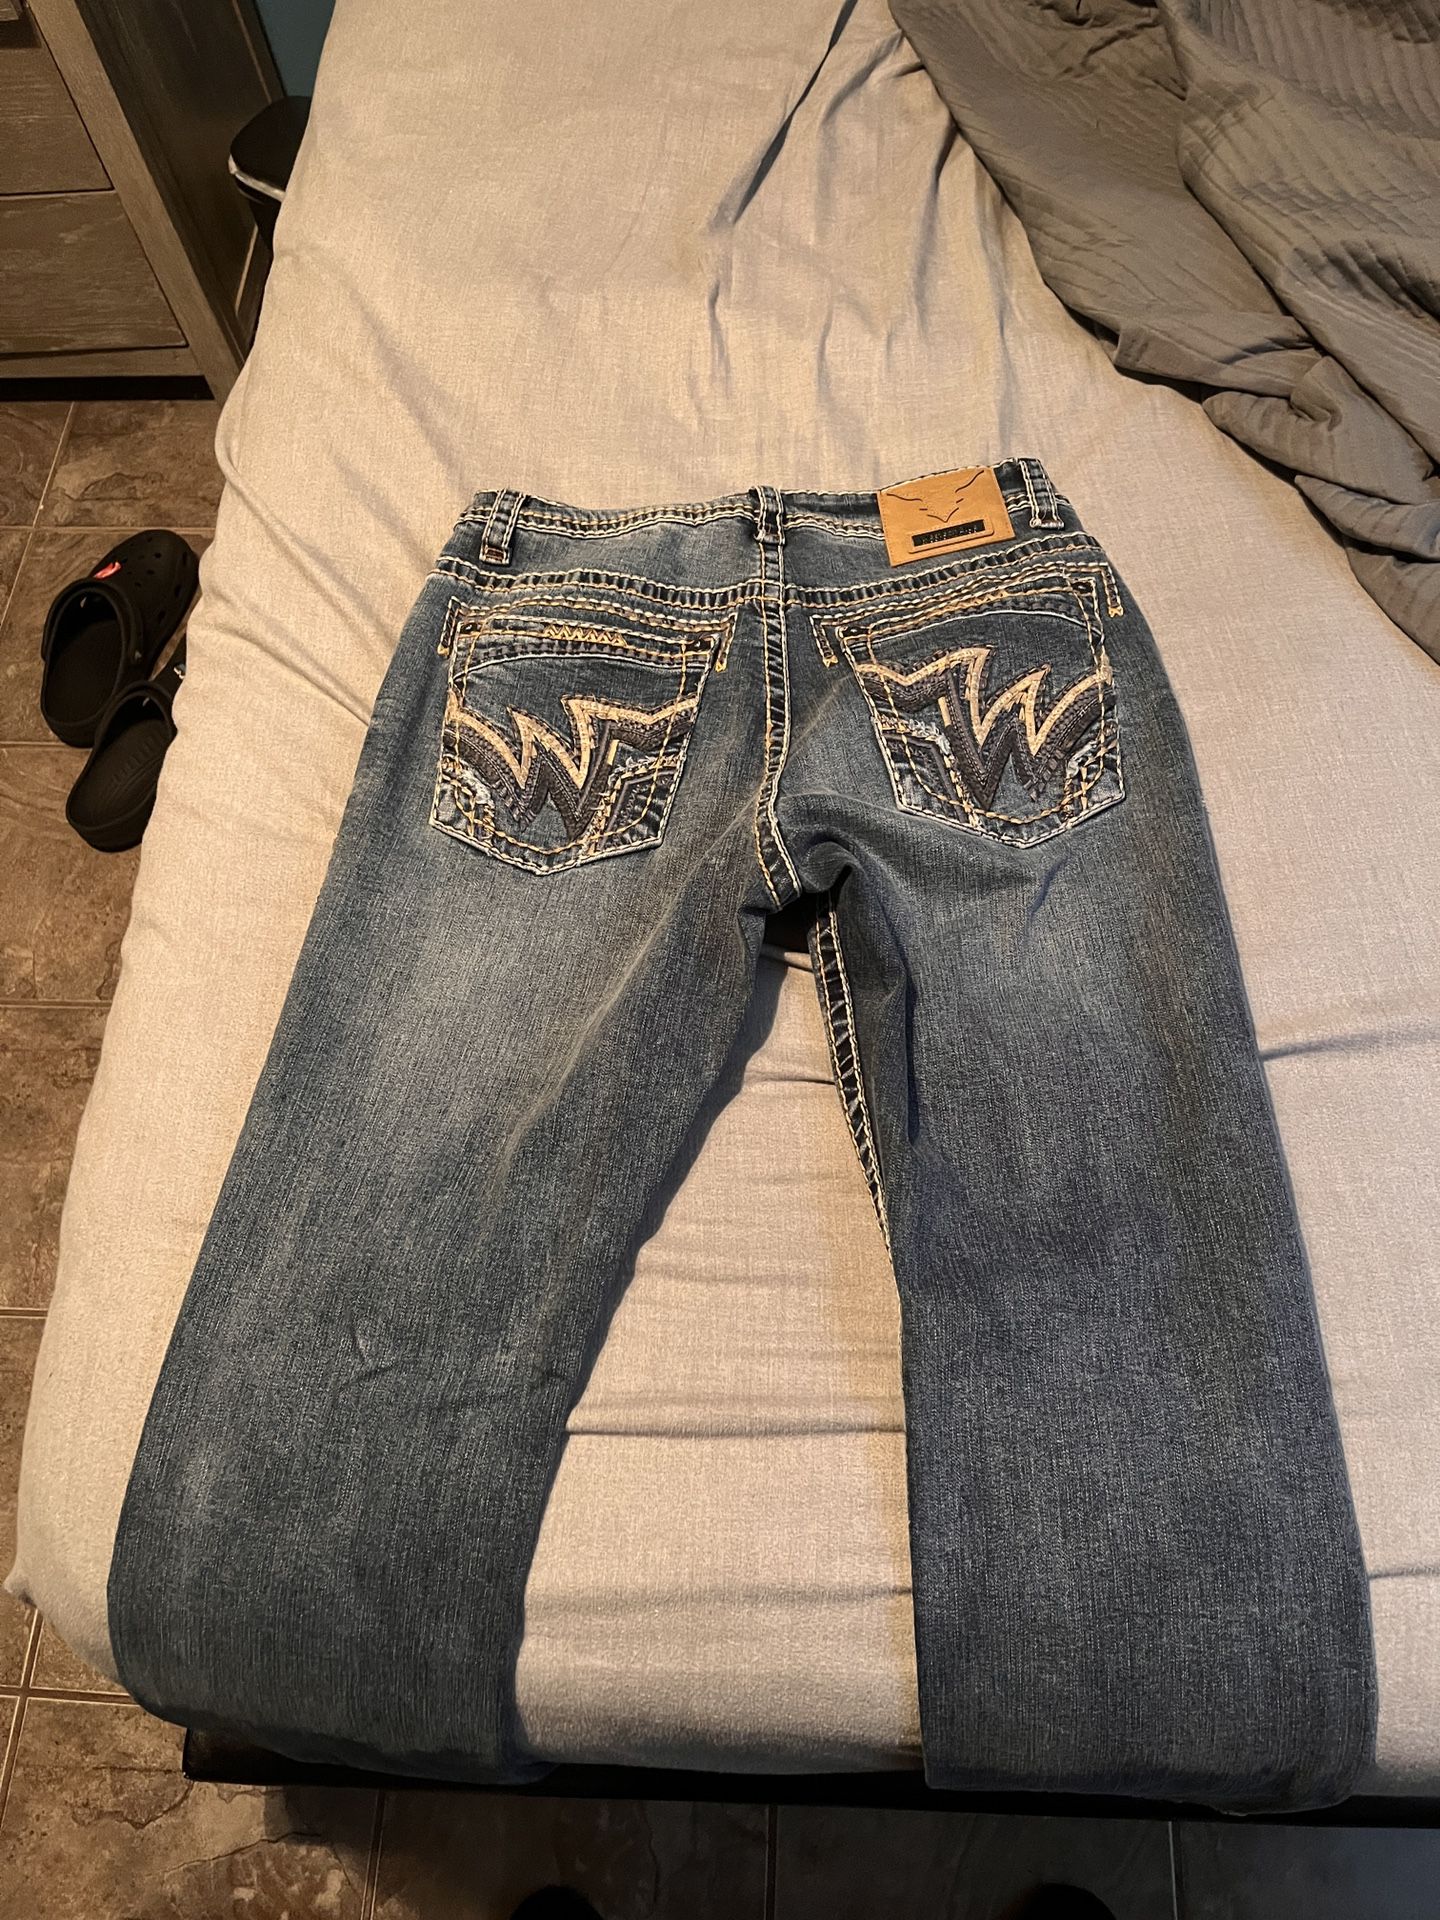 Western Blue Jeans